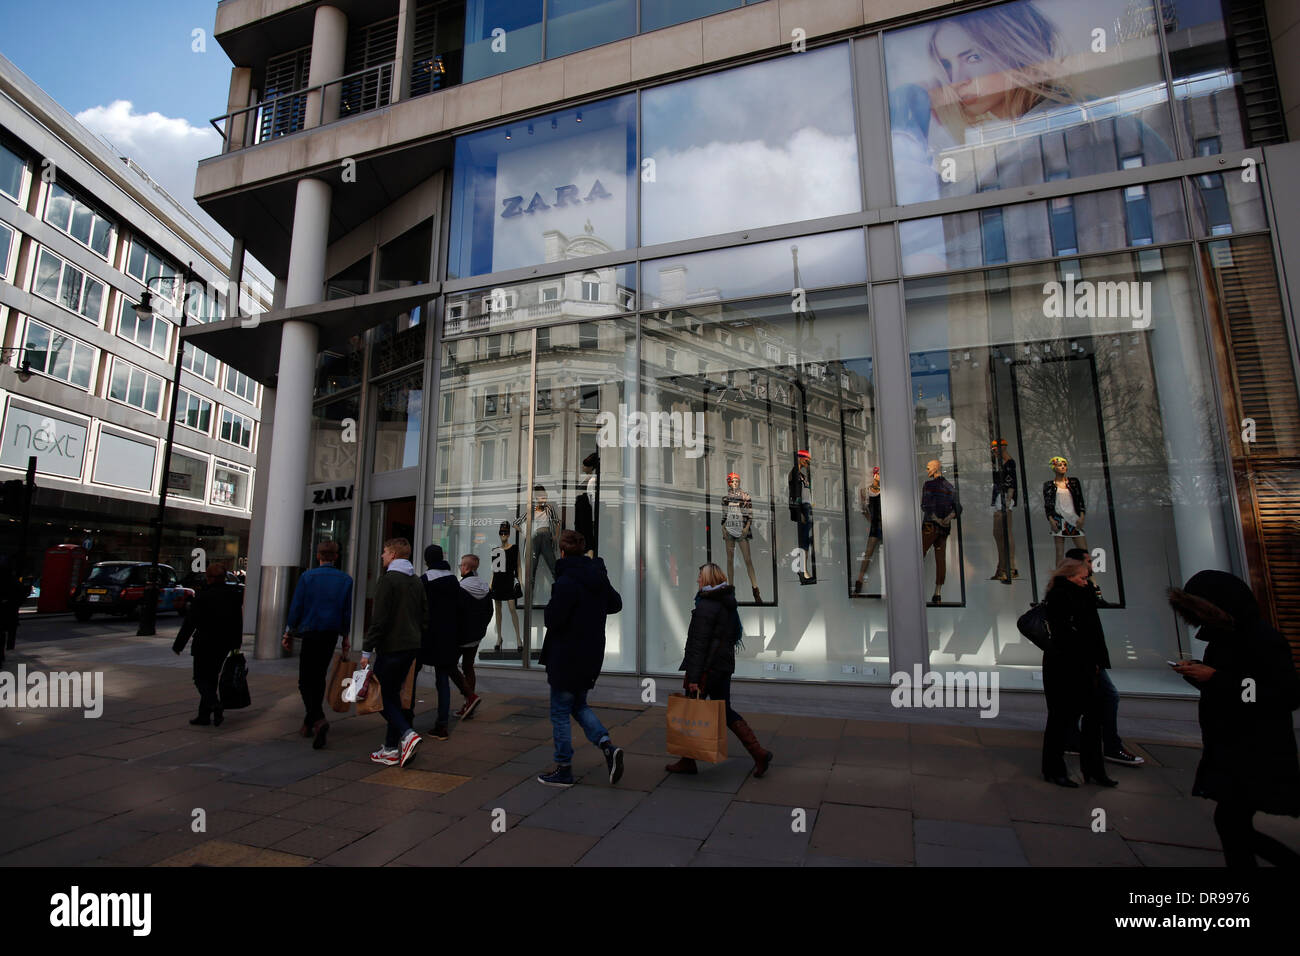 Boutique Zara à Oxford Street à Londres Angleterre 14 mars. Zara Inditex propriétaire Banque D'Images